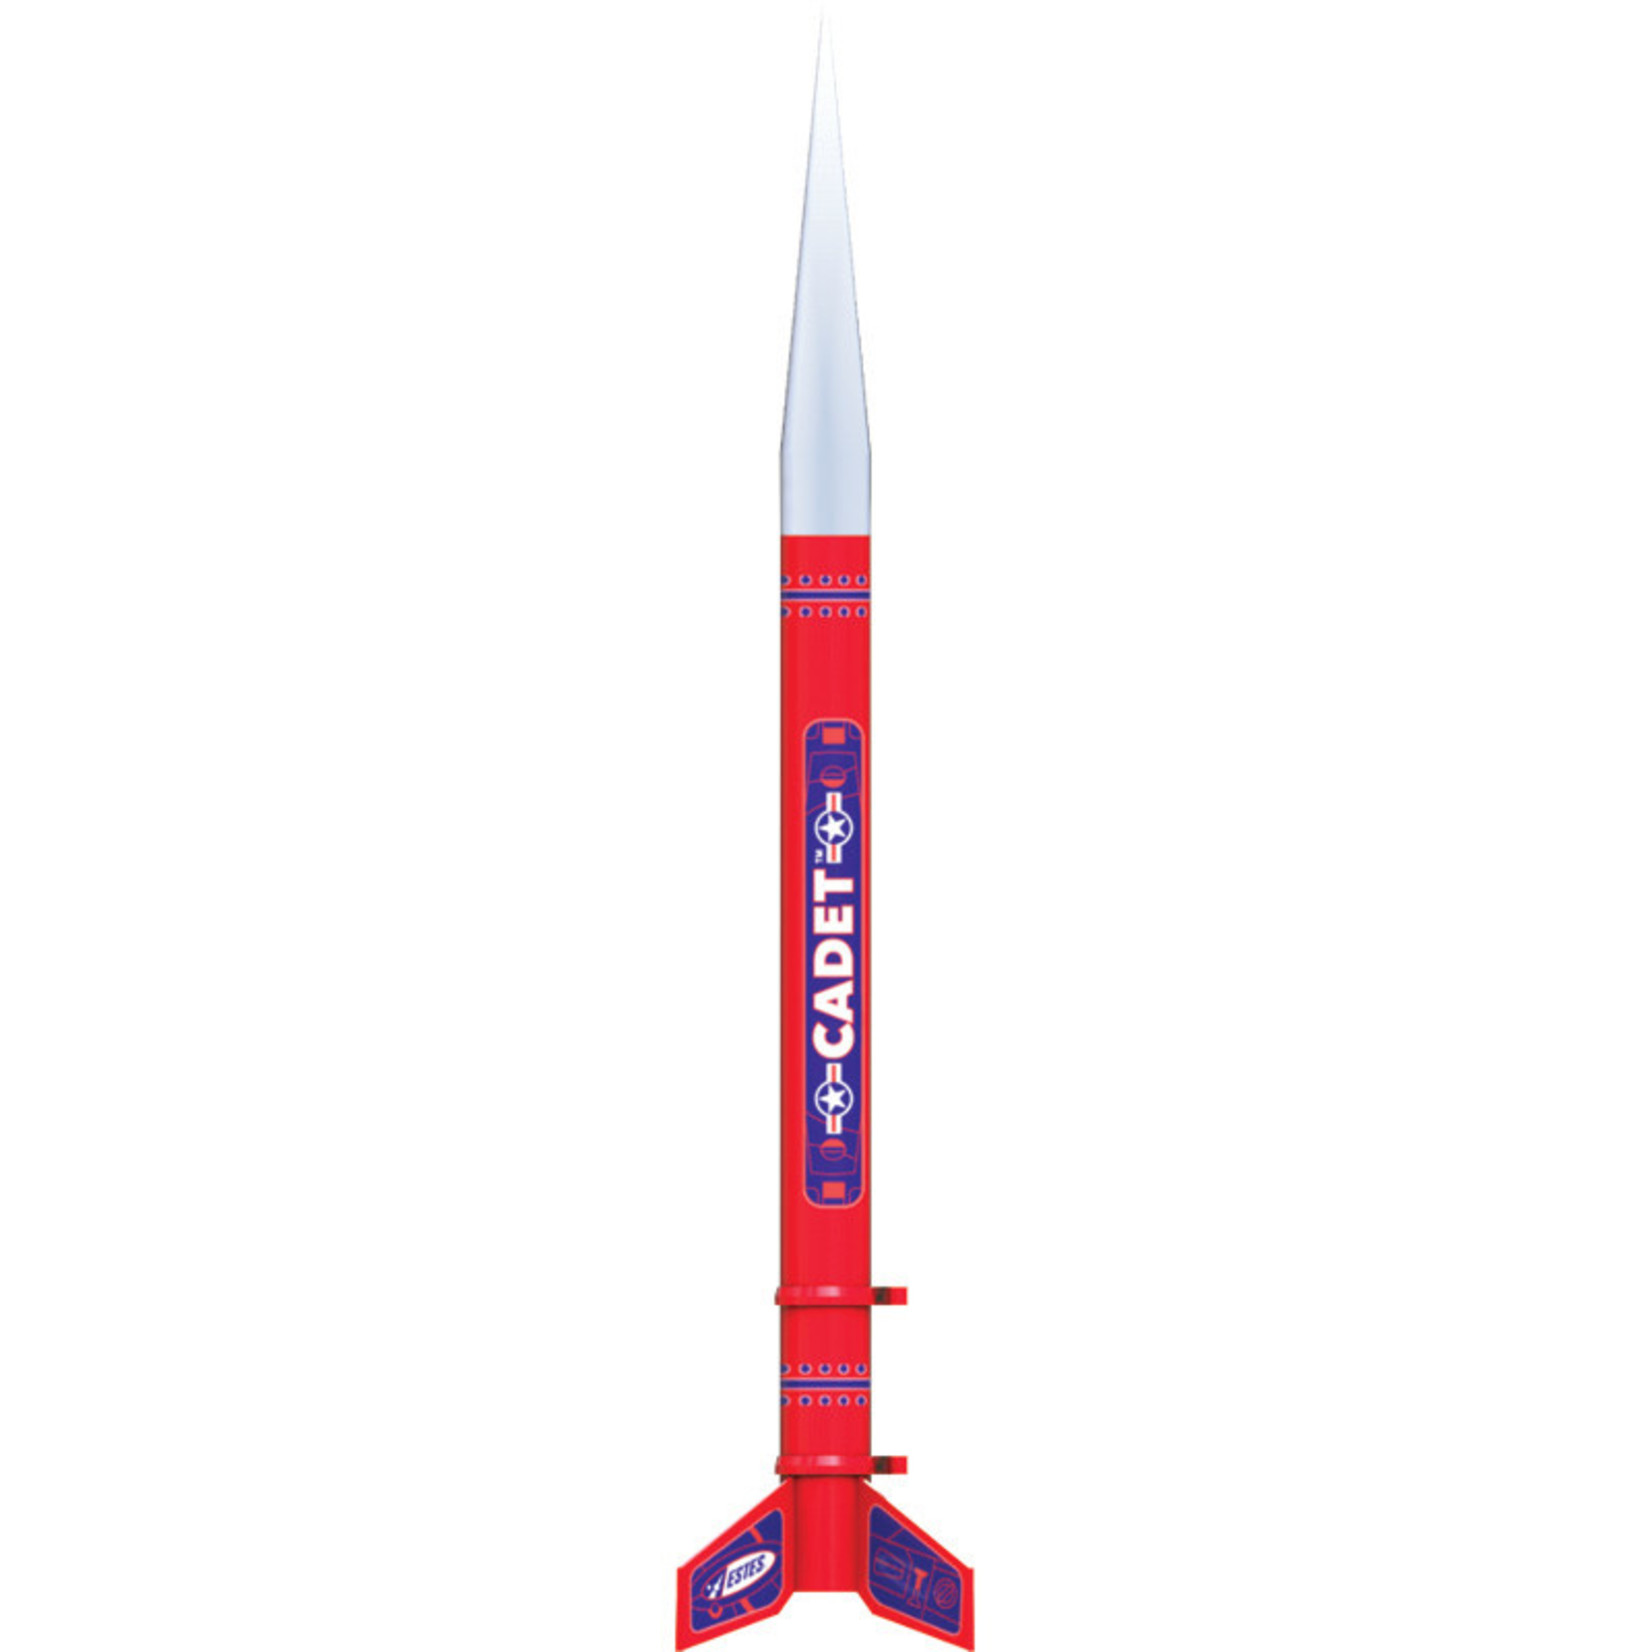 Estes EST2021 Cadet Rocket